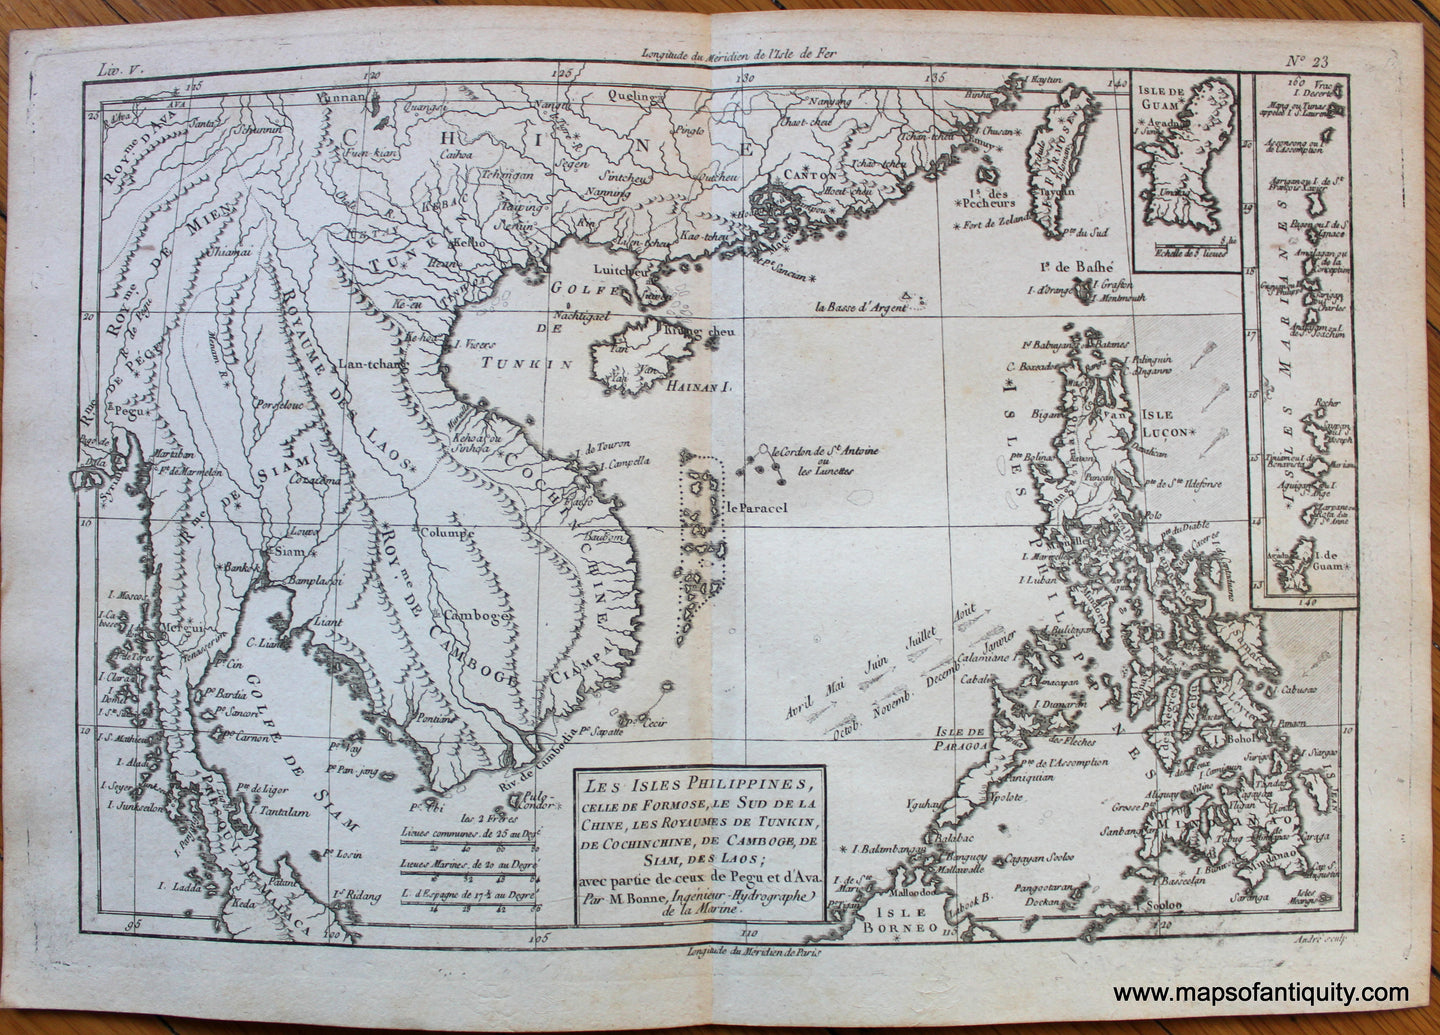 Antique-Early-Map-Les-Isles-Philippines-celle-de-Formose-Le-Sud-de-La-Chine-Les-Royaumes-de-Tunkin-de-Cochinchine-De-Camboge-de-Siam-des-Laos-Asia-Raynal-and-Bonne-1780-1780s-1700s-Late-18th-Century-Maps-of-Antiquity